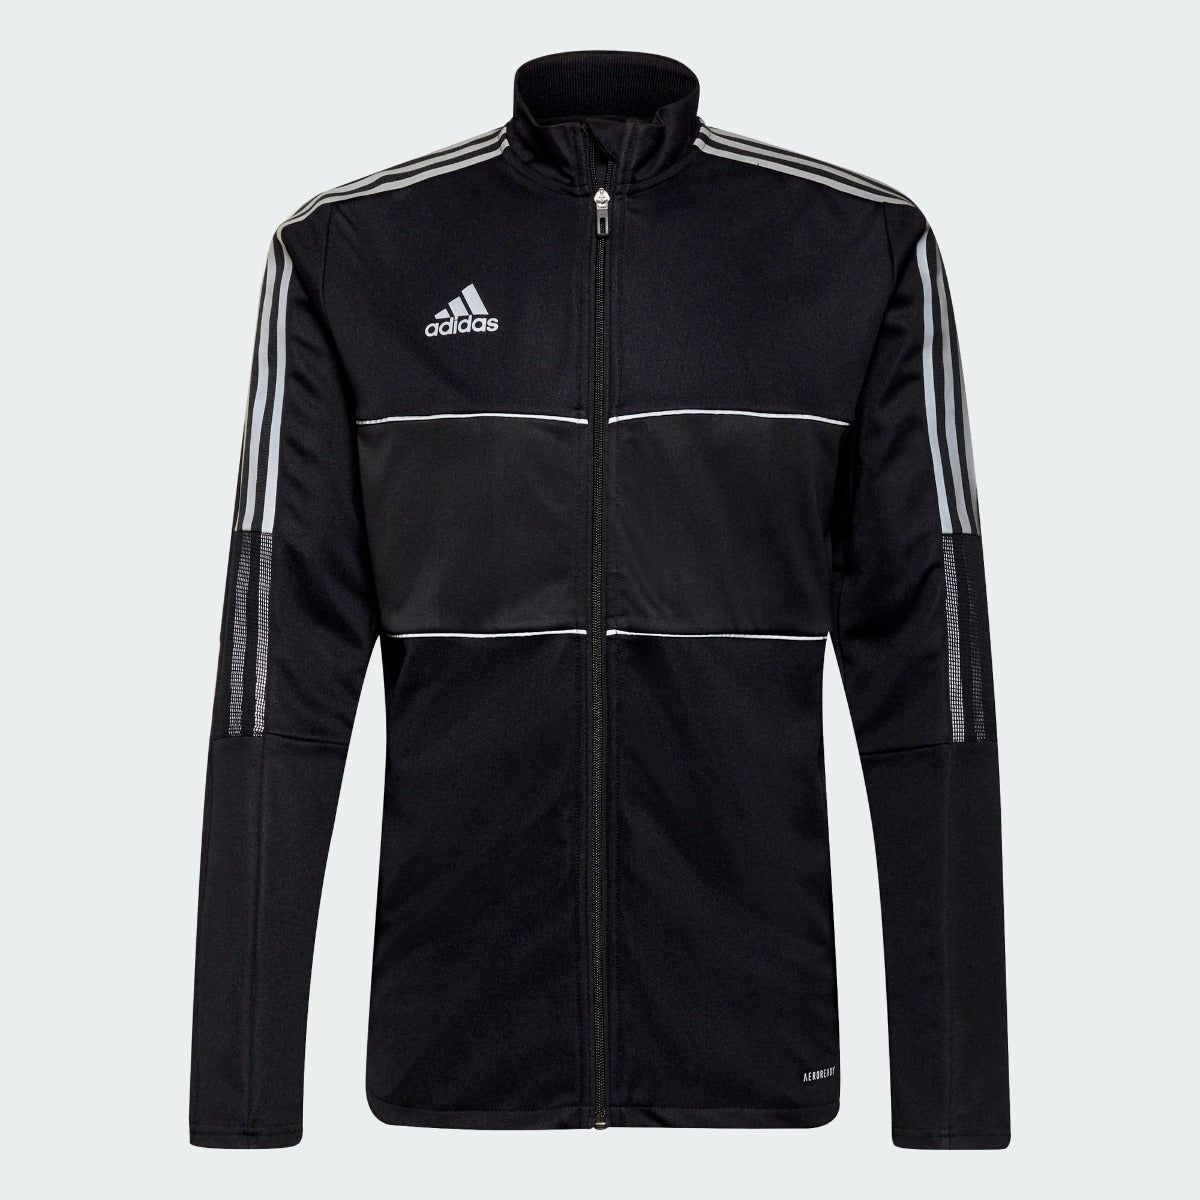 Adidas Tiro Track Jacket - Black-White (Front)